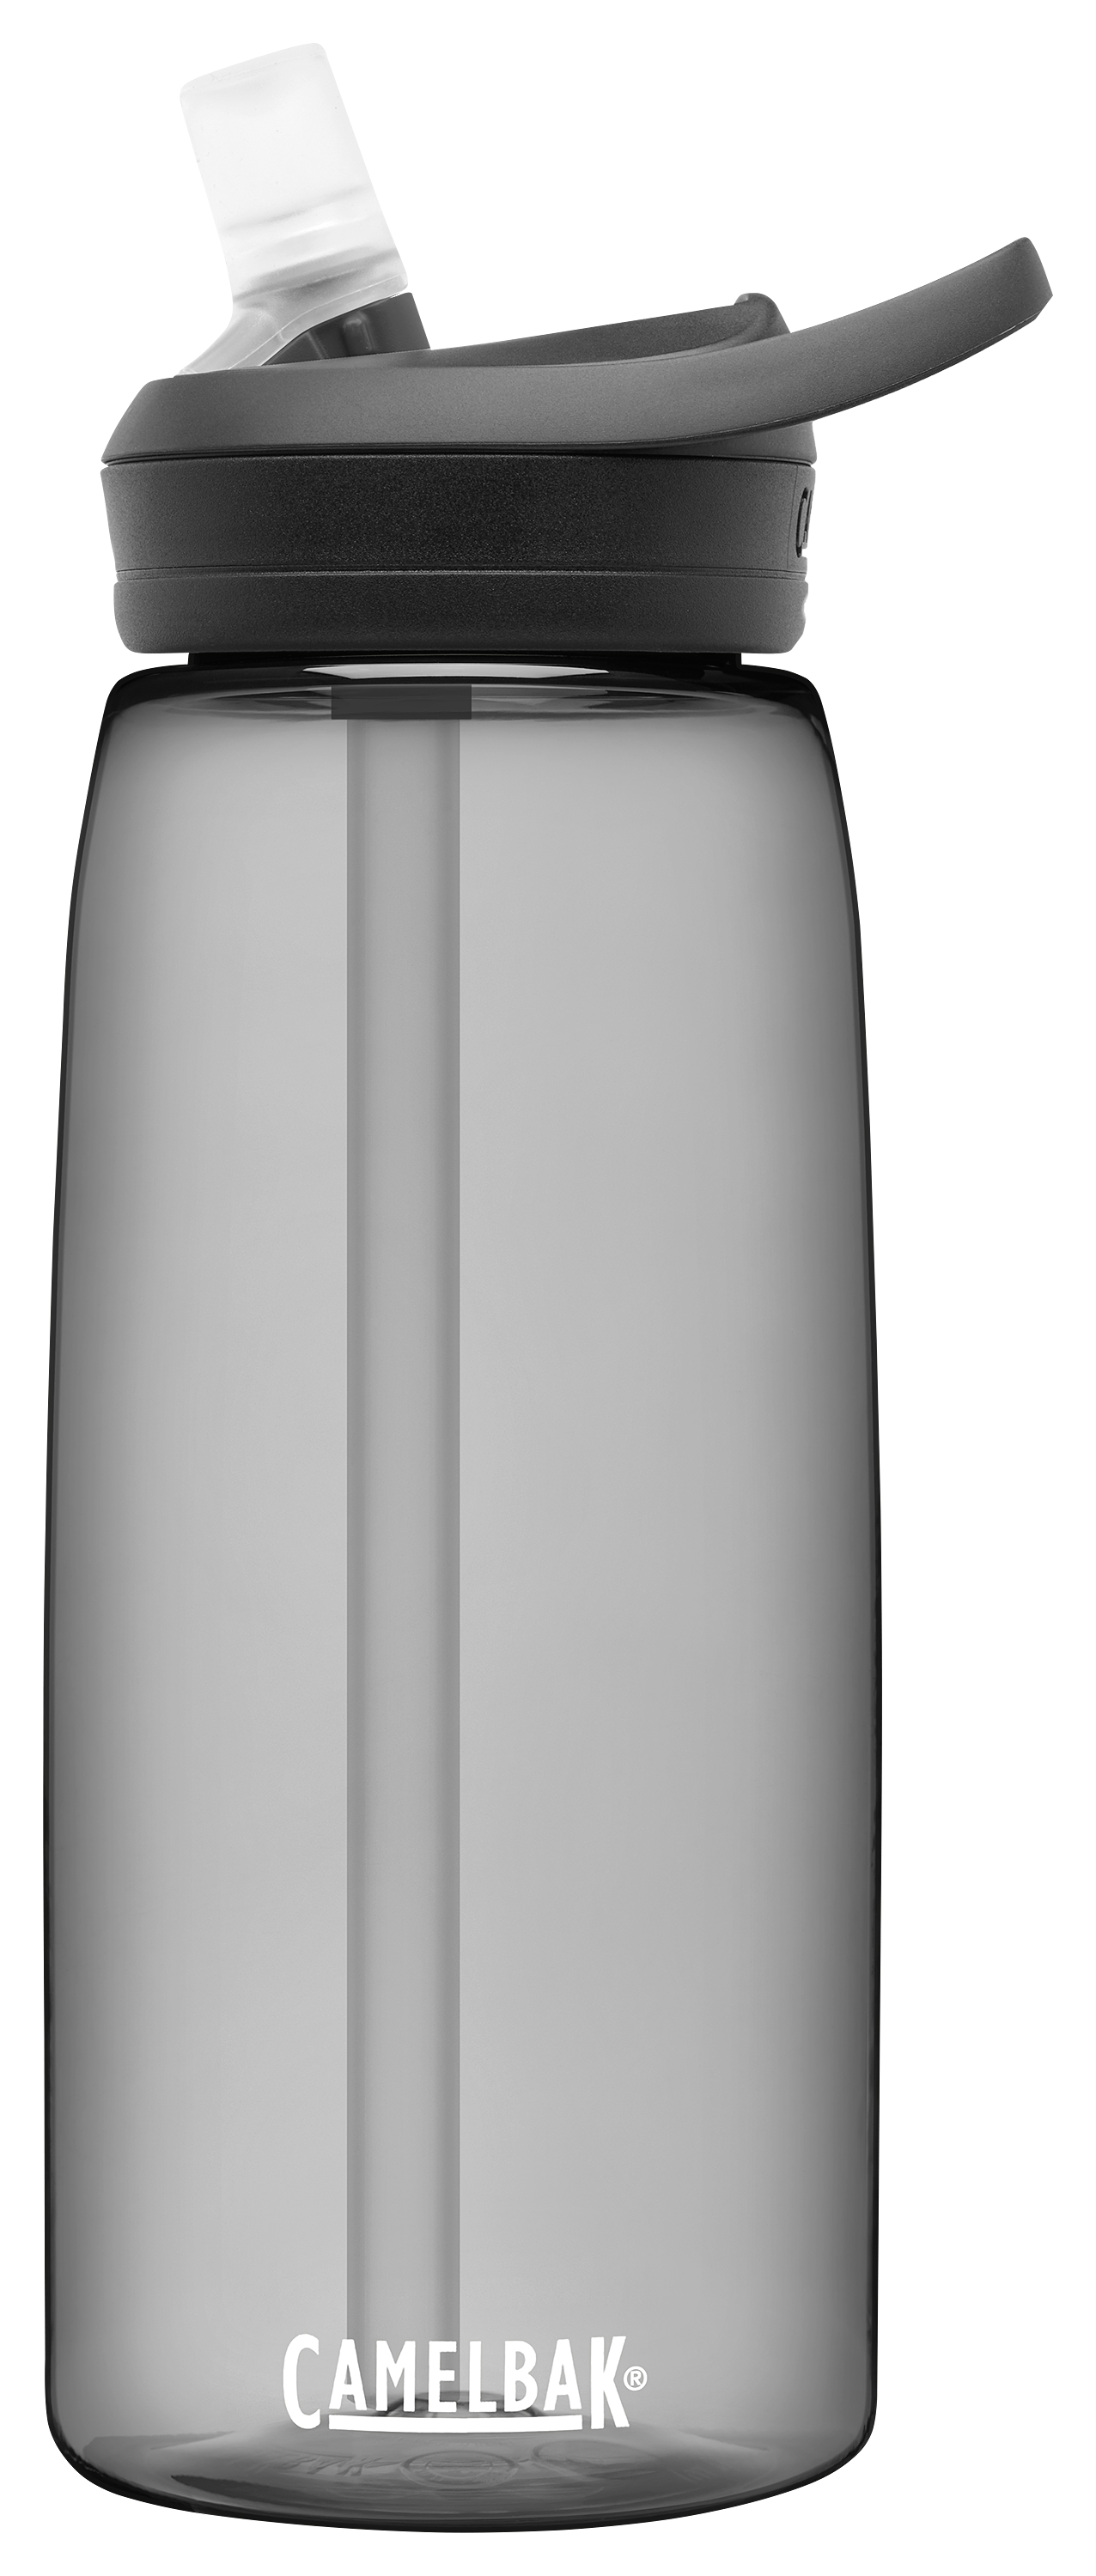 Nalgene 32-Oz. Water Bottle Gray 4004002 - Best Buy